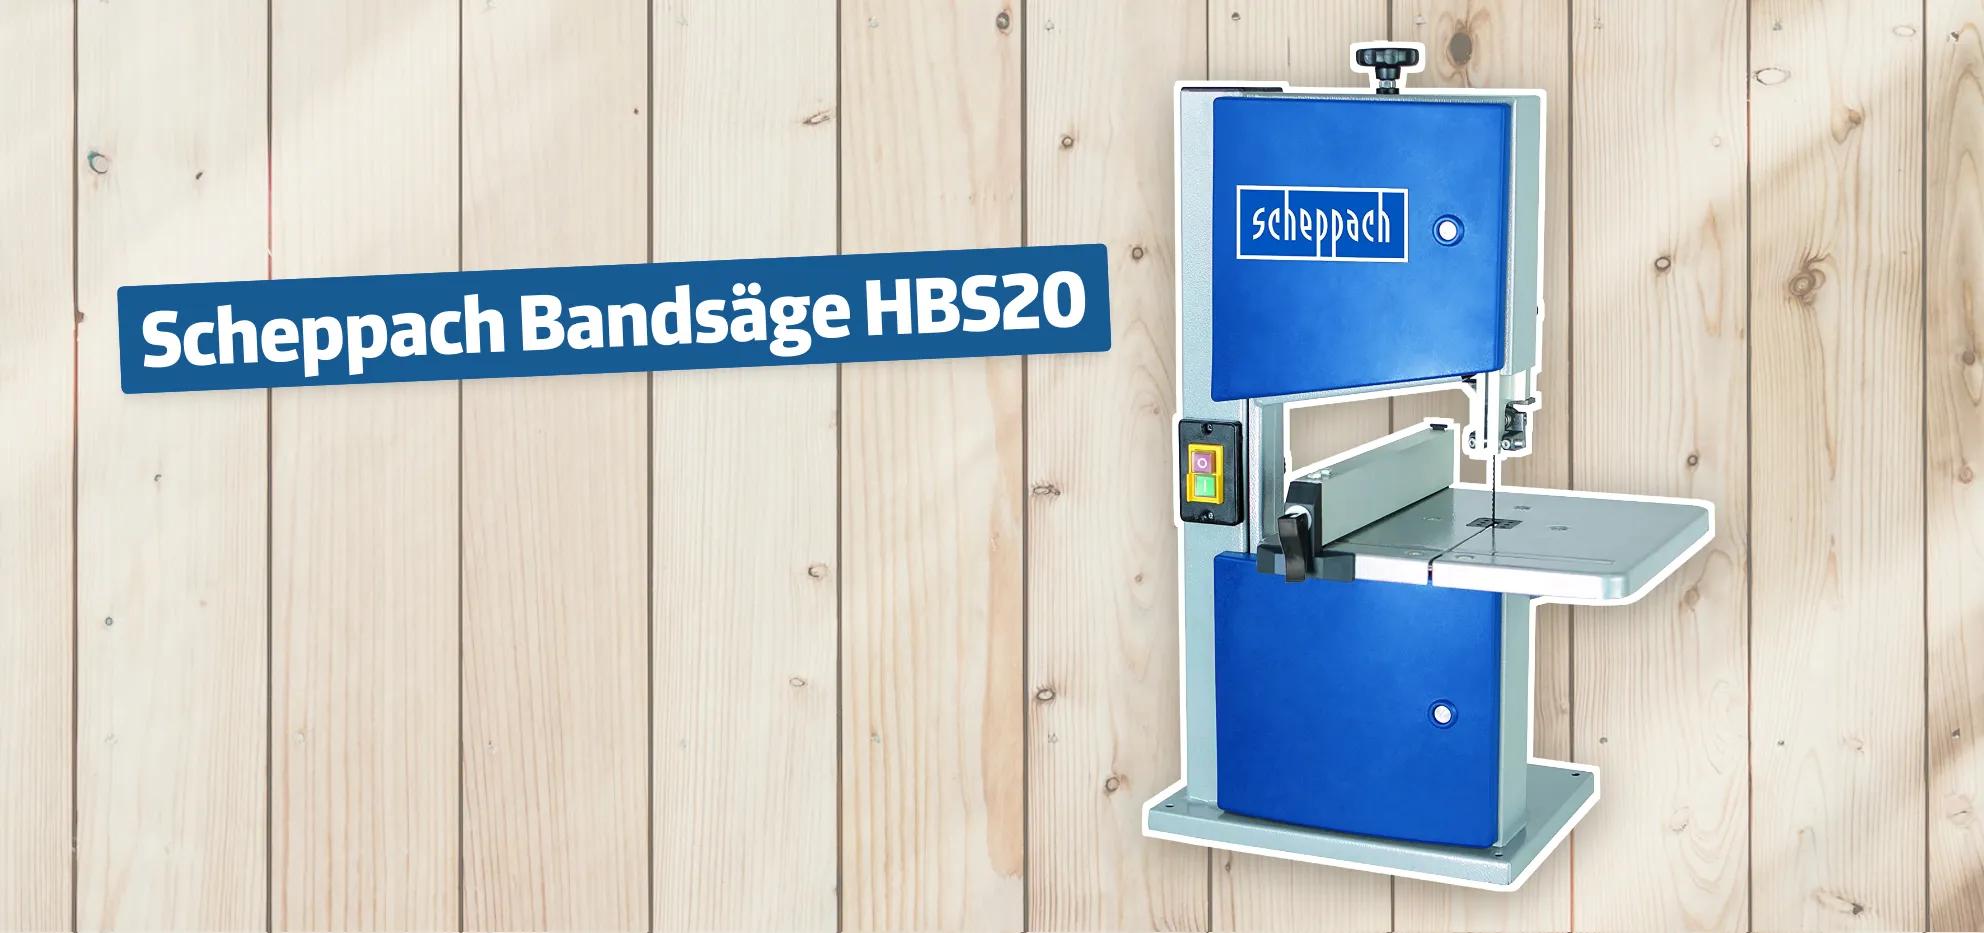 Scheppach Bandsäge HBS20